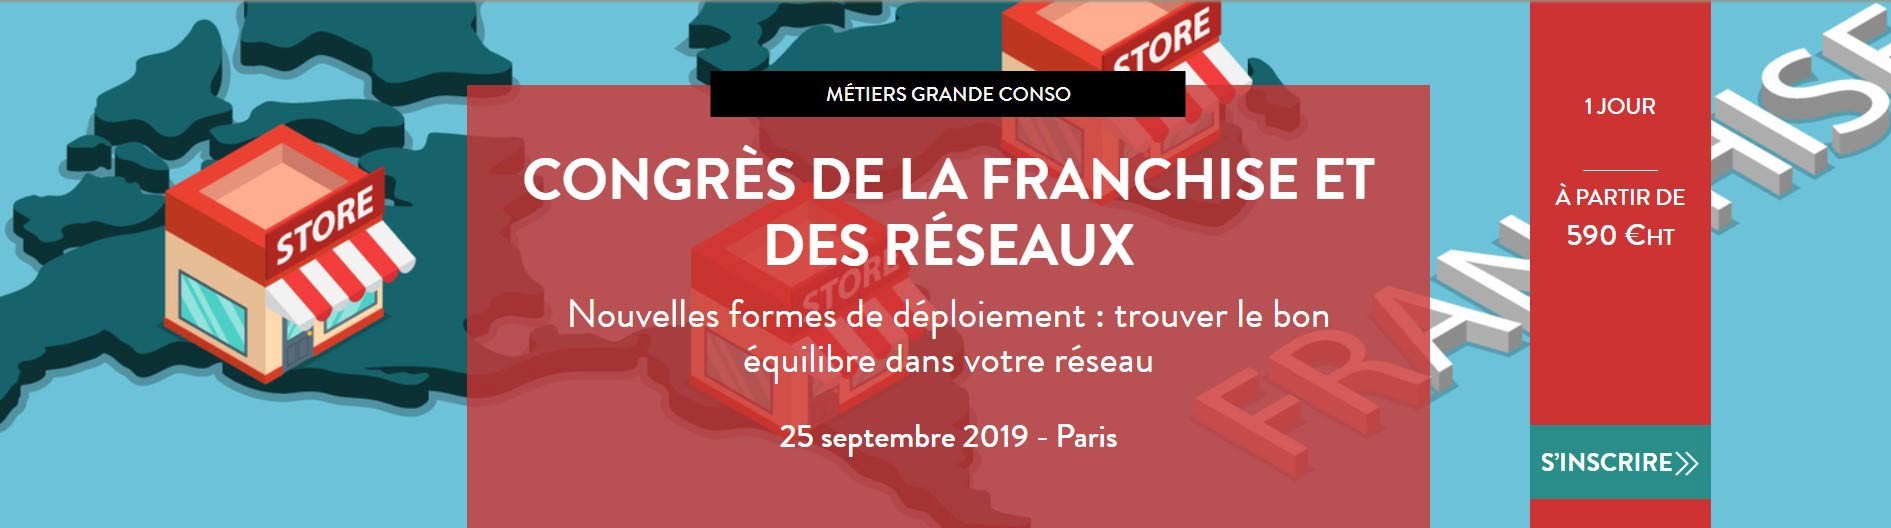 Congrès de la Franchise et des Réseaux 2019 